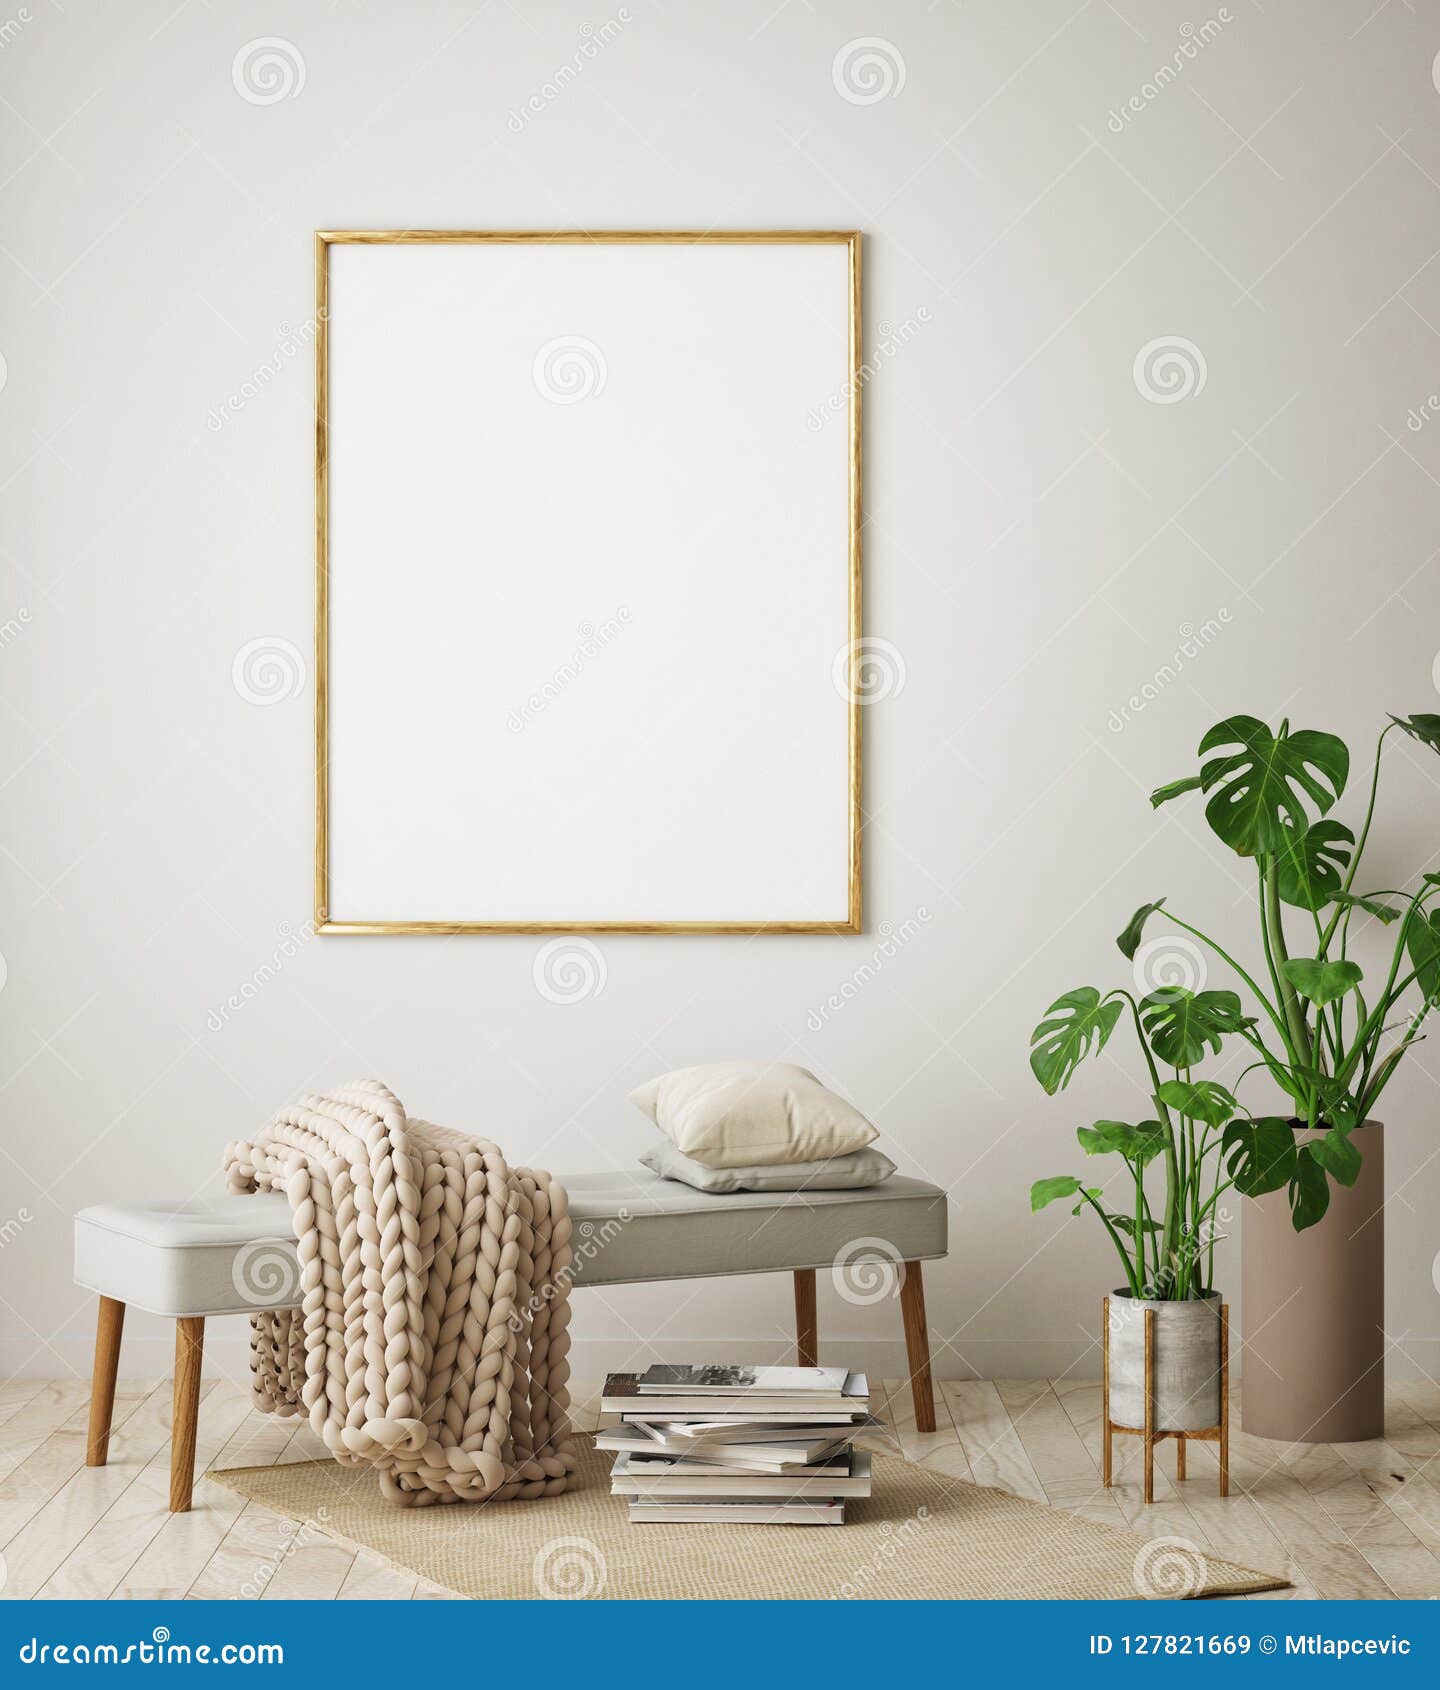 mock up poster frame in hipster interior background, living room, scandinavian style, 3d render, 3d 